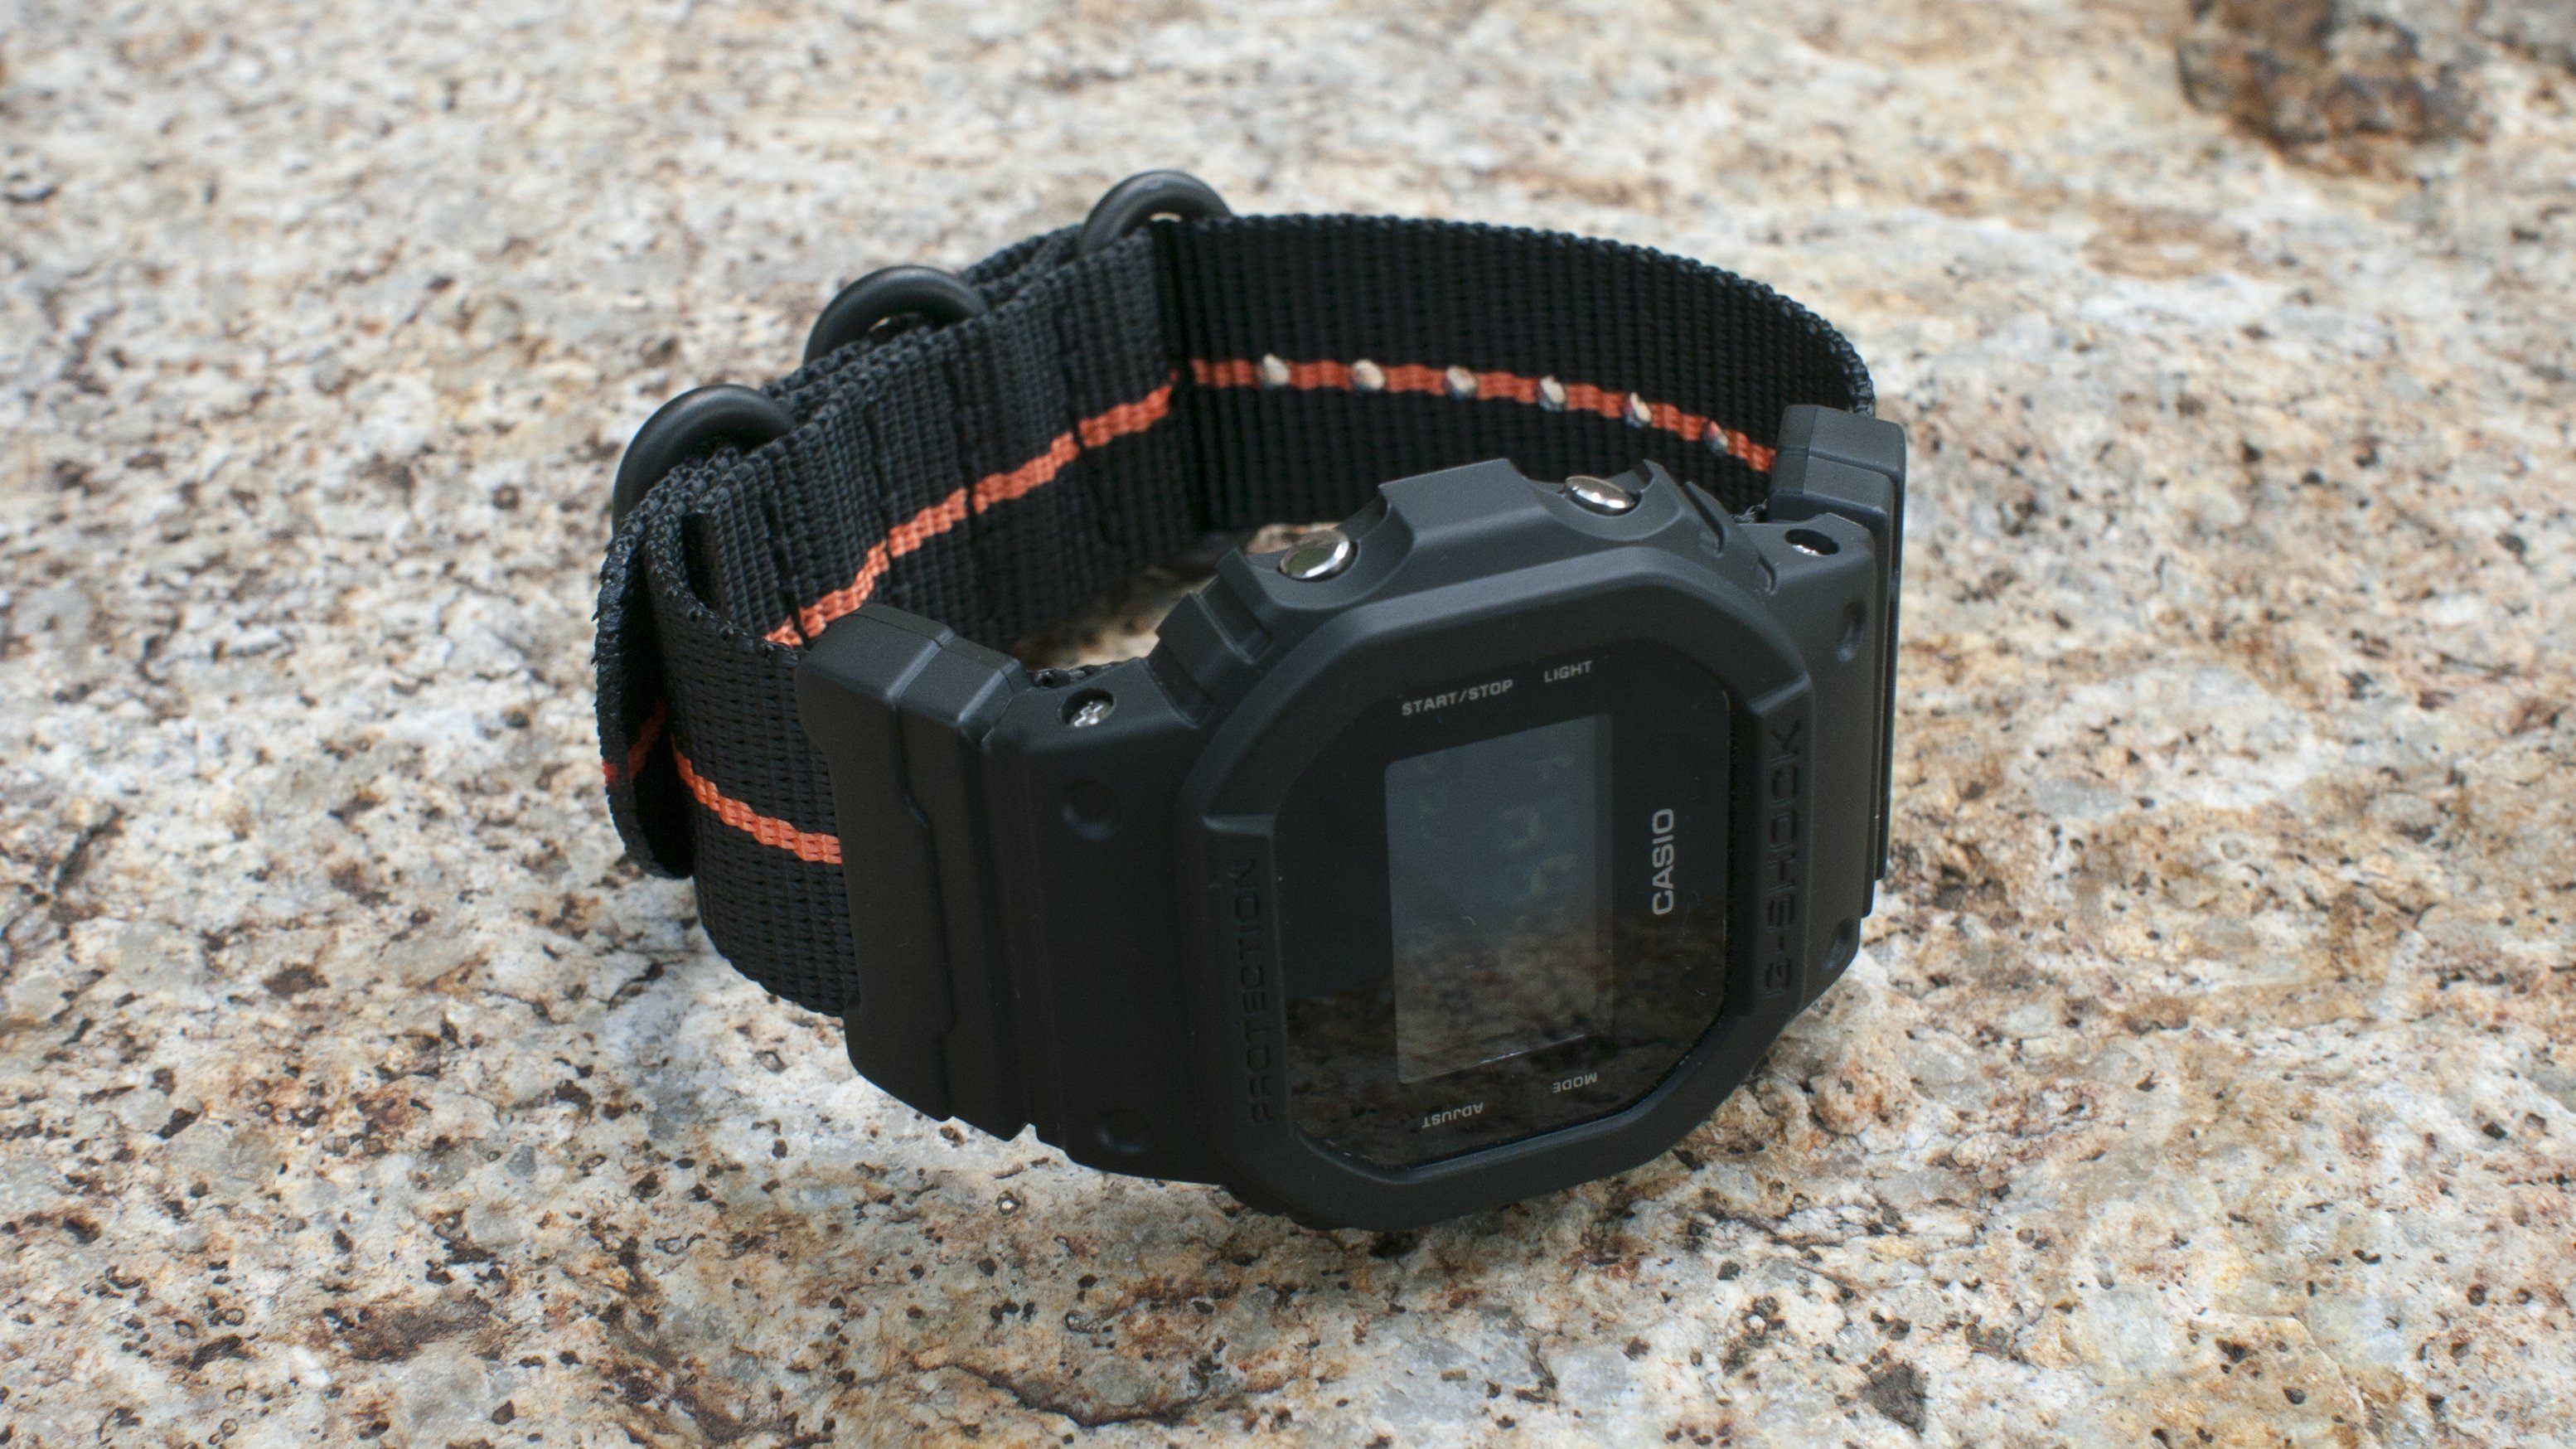 gshock dw5600 vario ballistic nylon orange black stripe maratac strap with casio g shock adapter